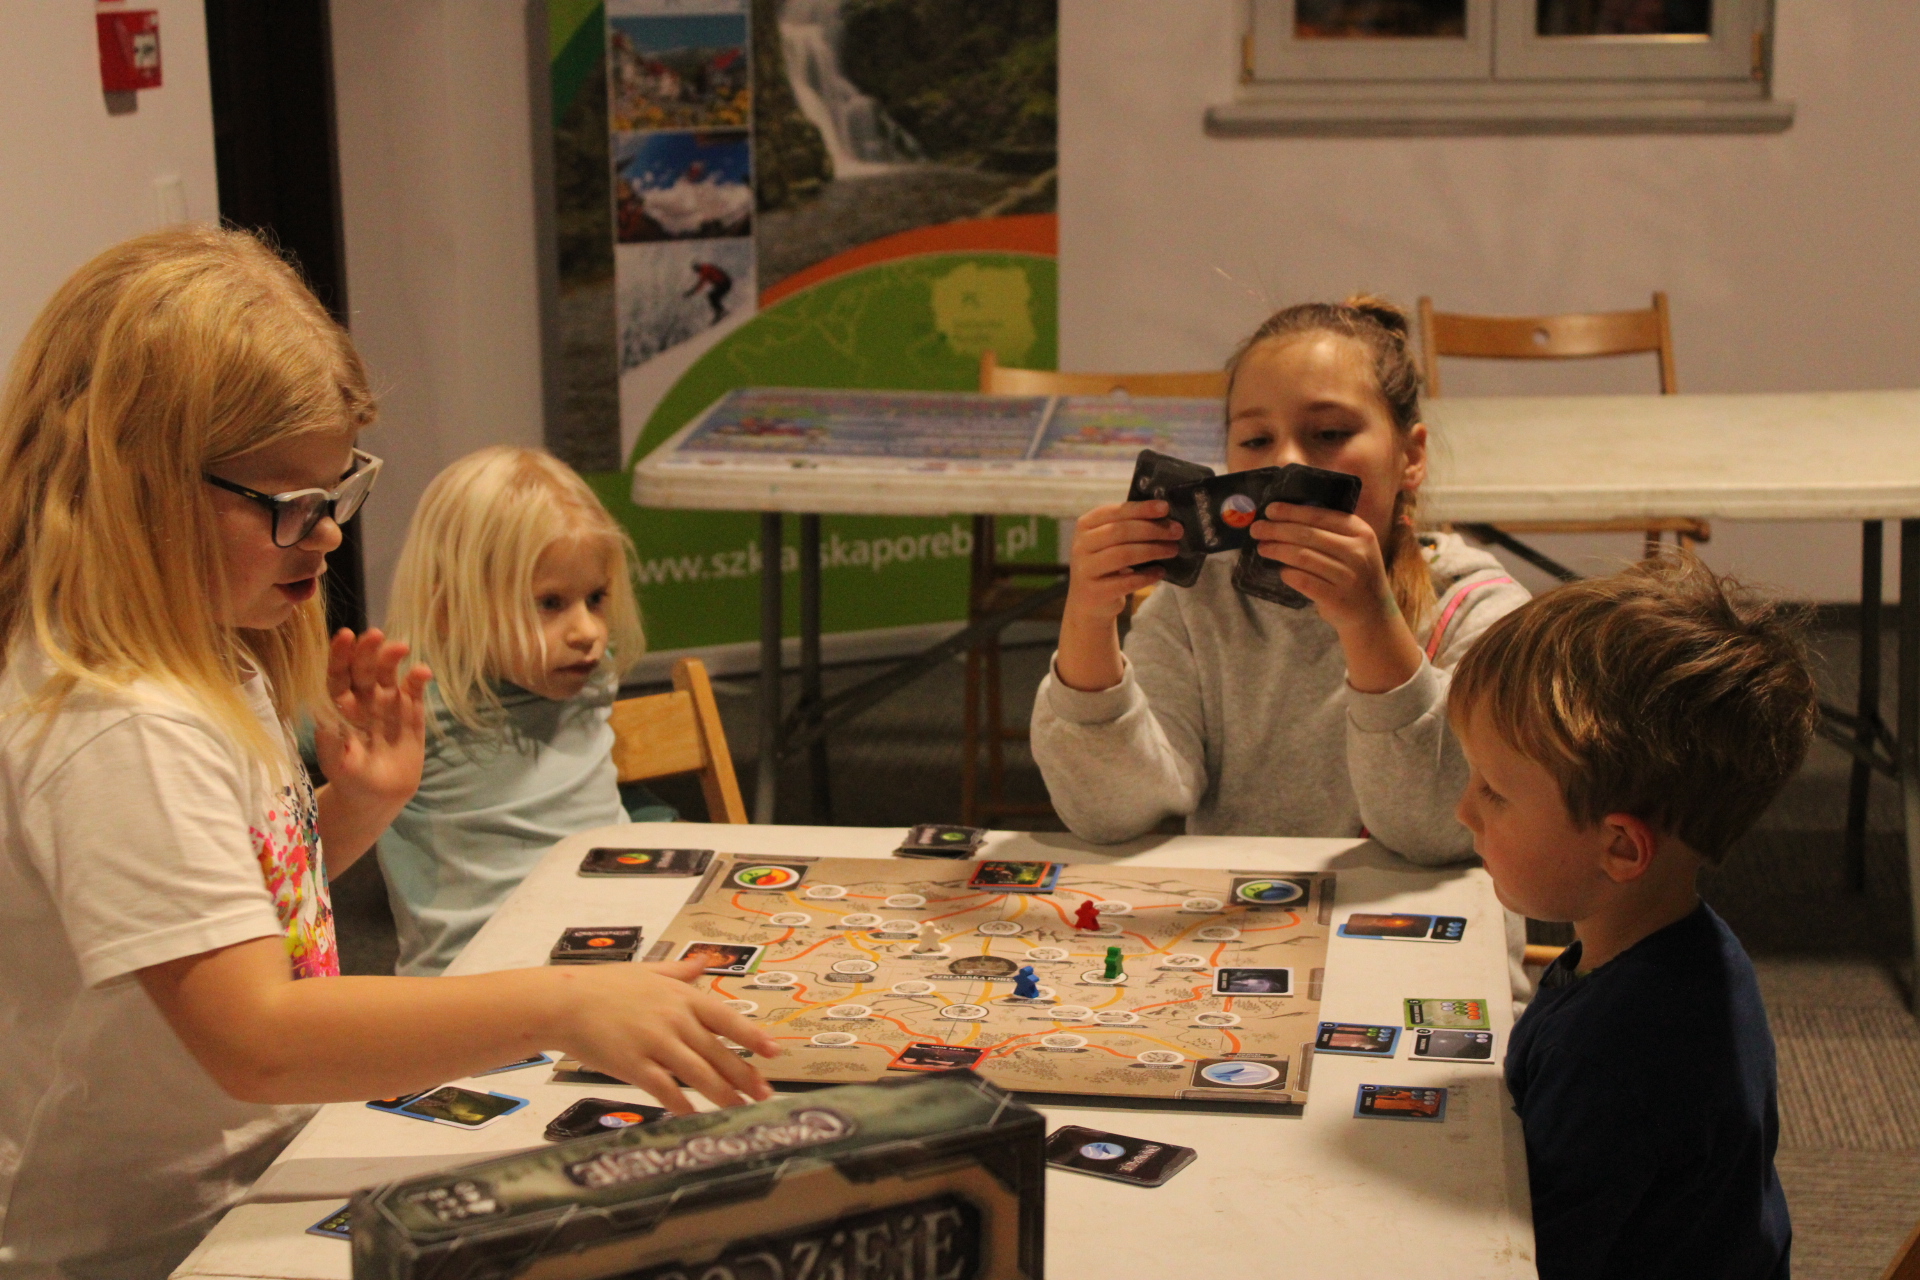 Dzieci grają w grę CzaroDzieje, której akcja rogrywa się w Szklarskiej Porębie, a gracze wcielają się w postacie z miejscowych legend